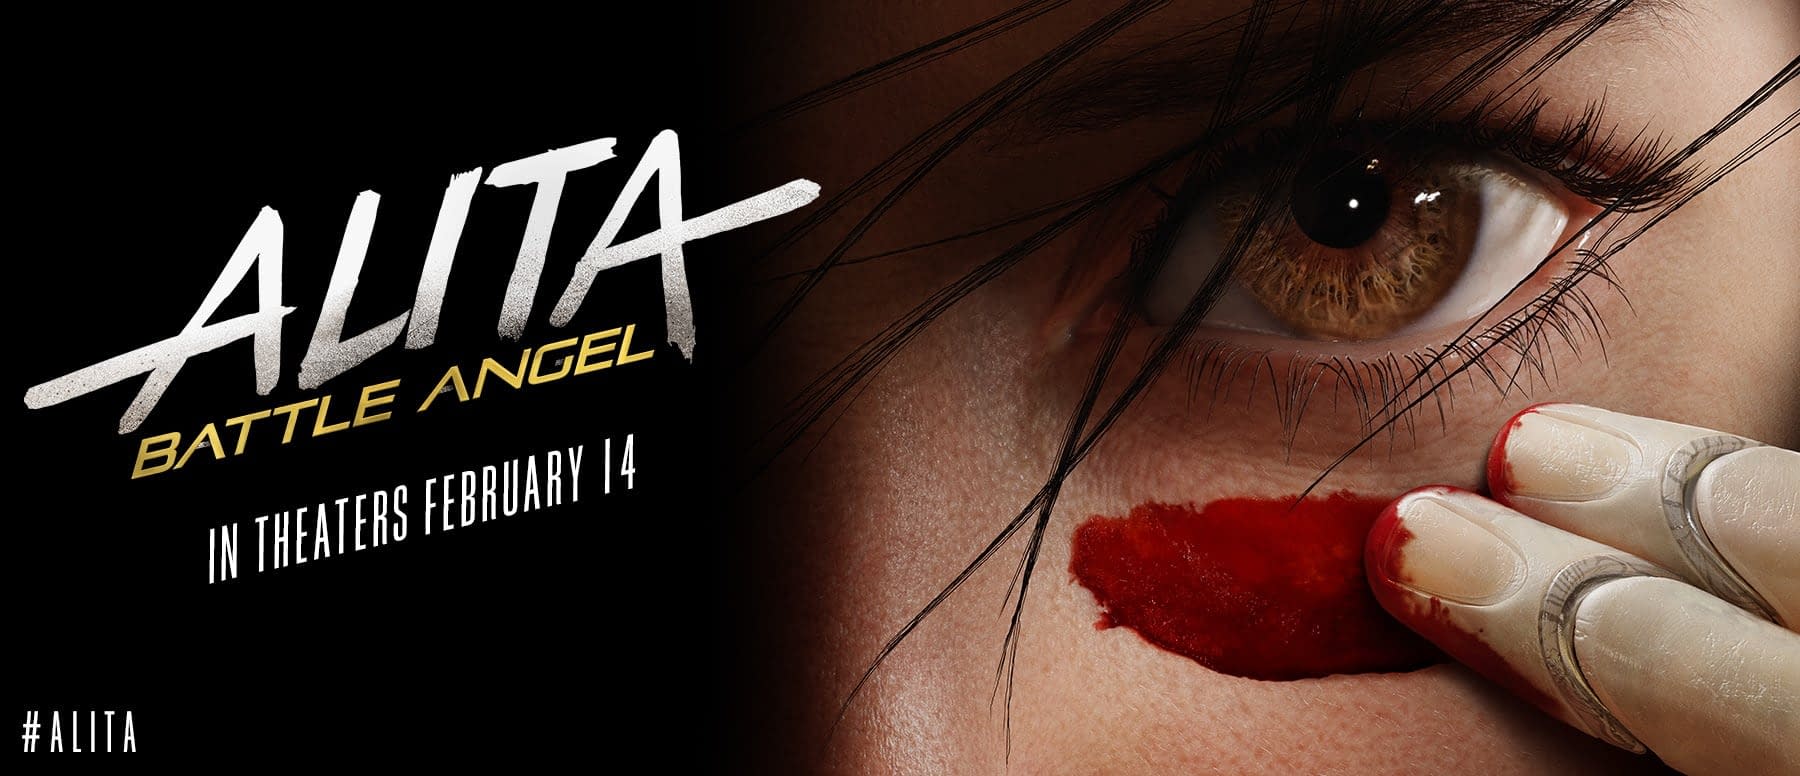 James Cameron and Robert Rodriguez Talk Alita: Battle Angel Sequel Plans